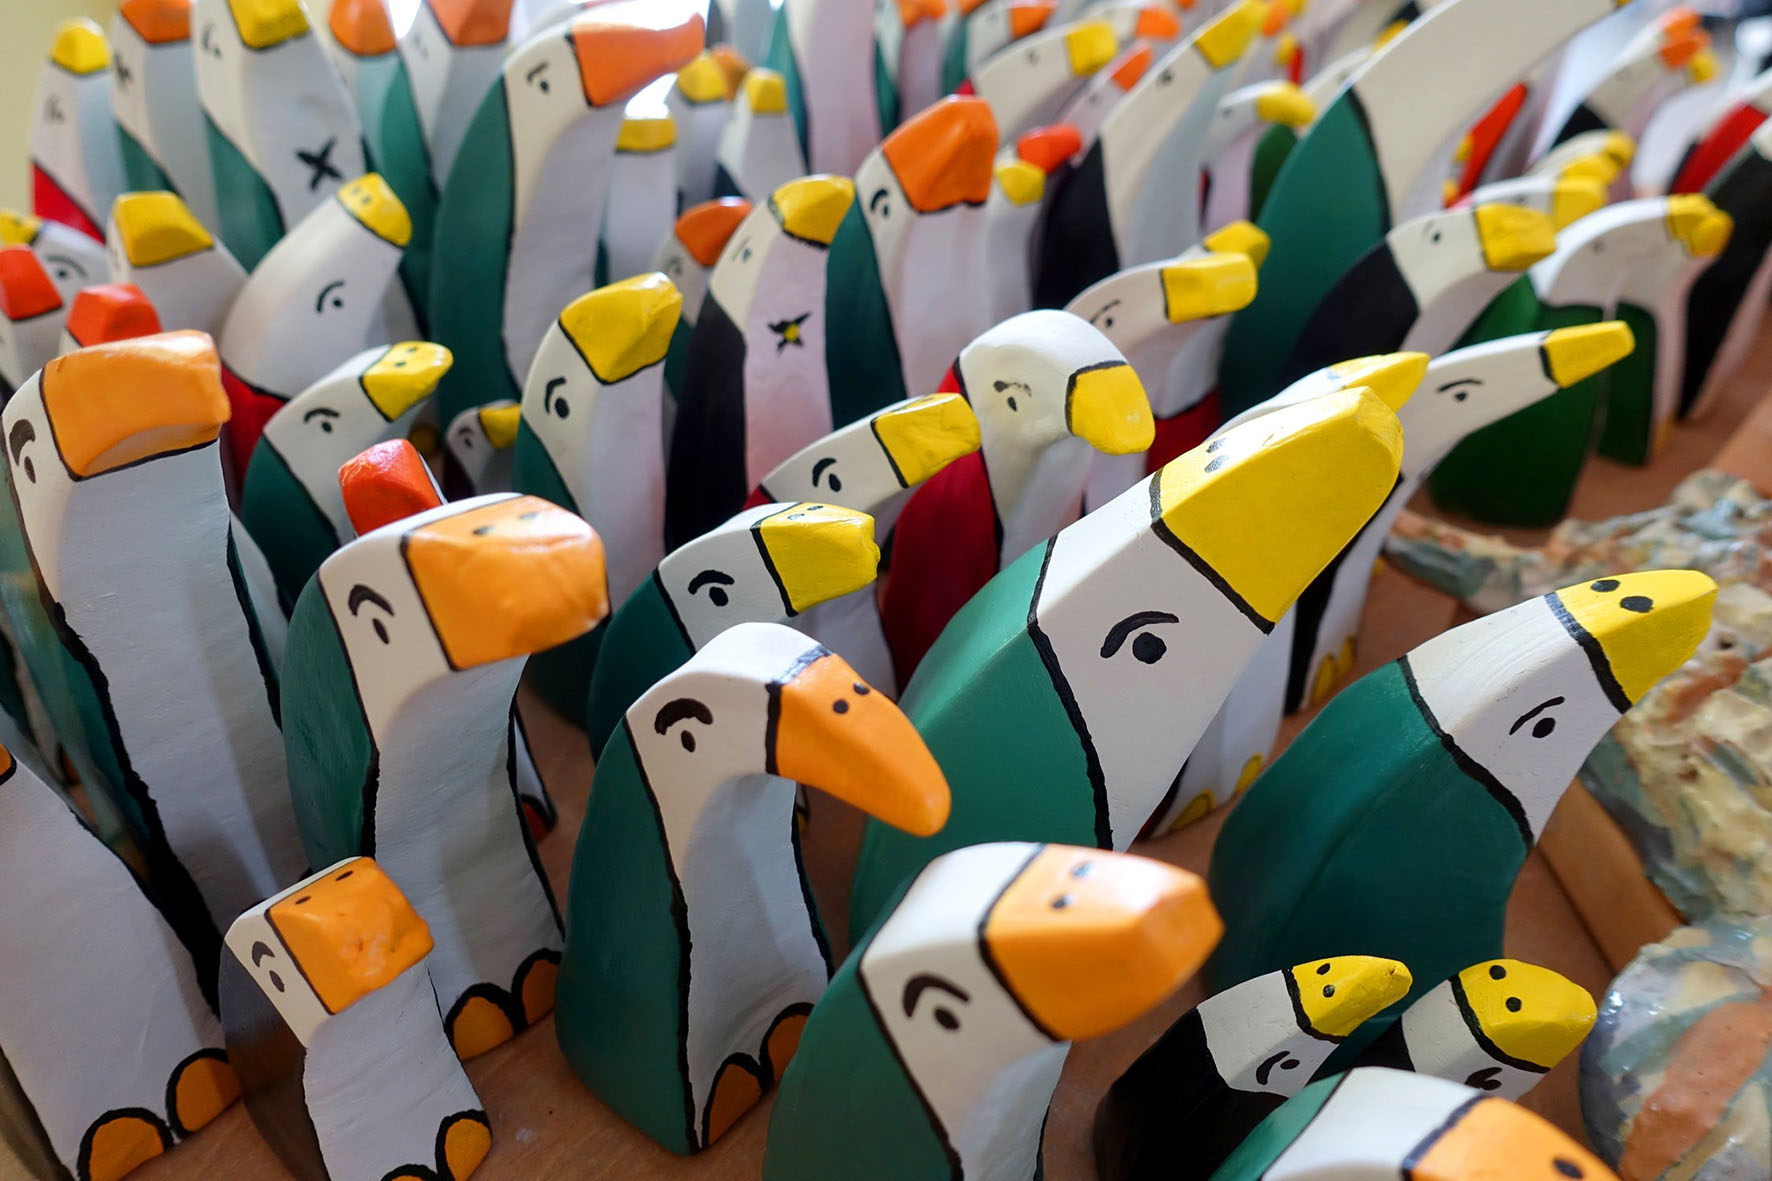 “Meno alti dei pinguini”: il festival dell’infanzia colora il centro di Arezzo